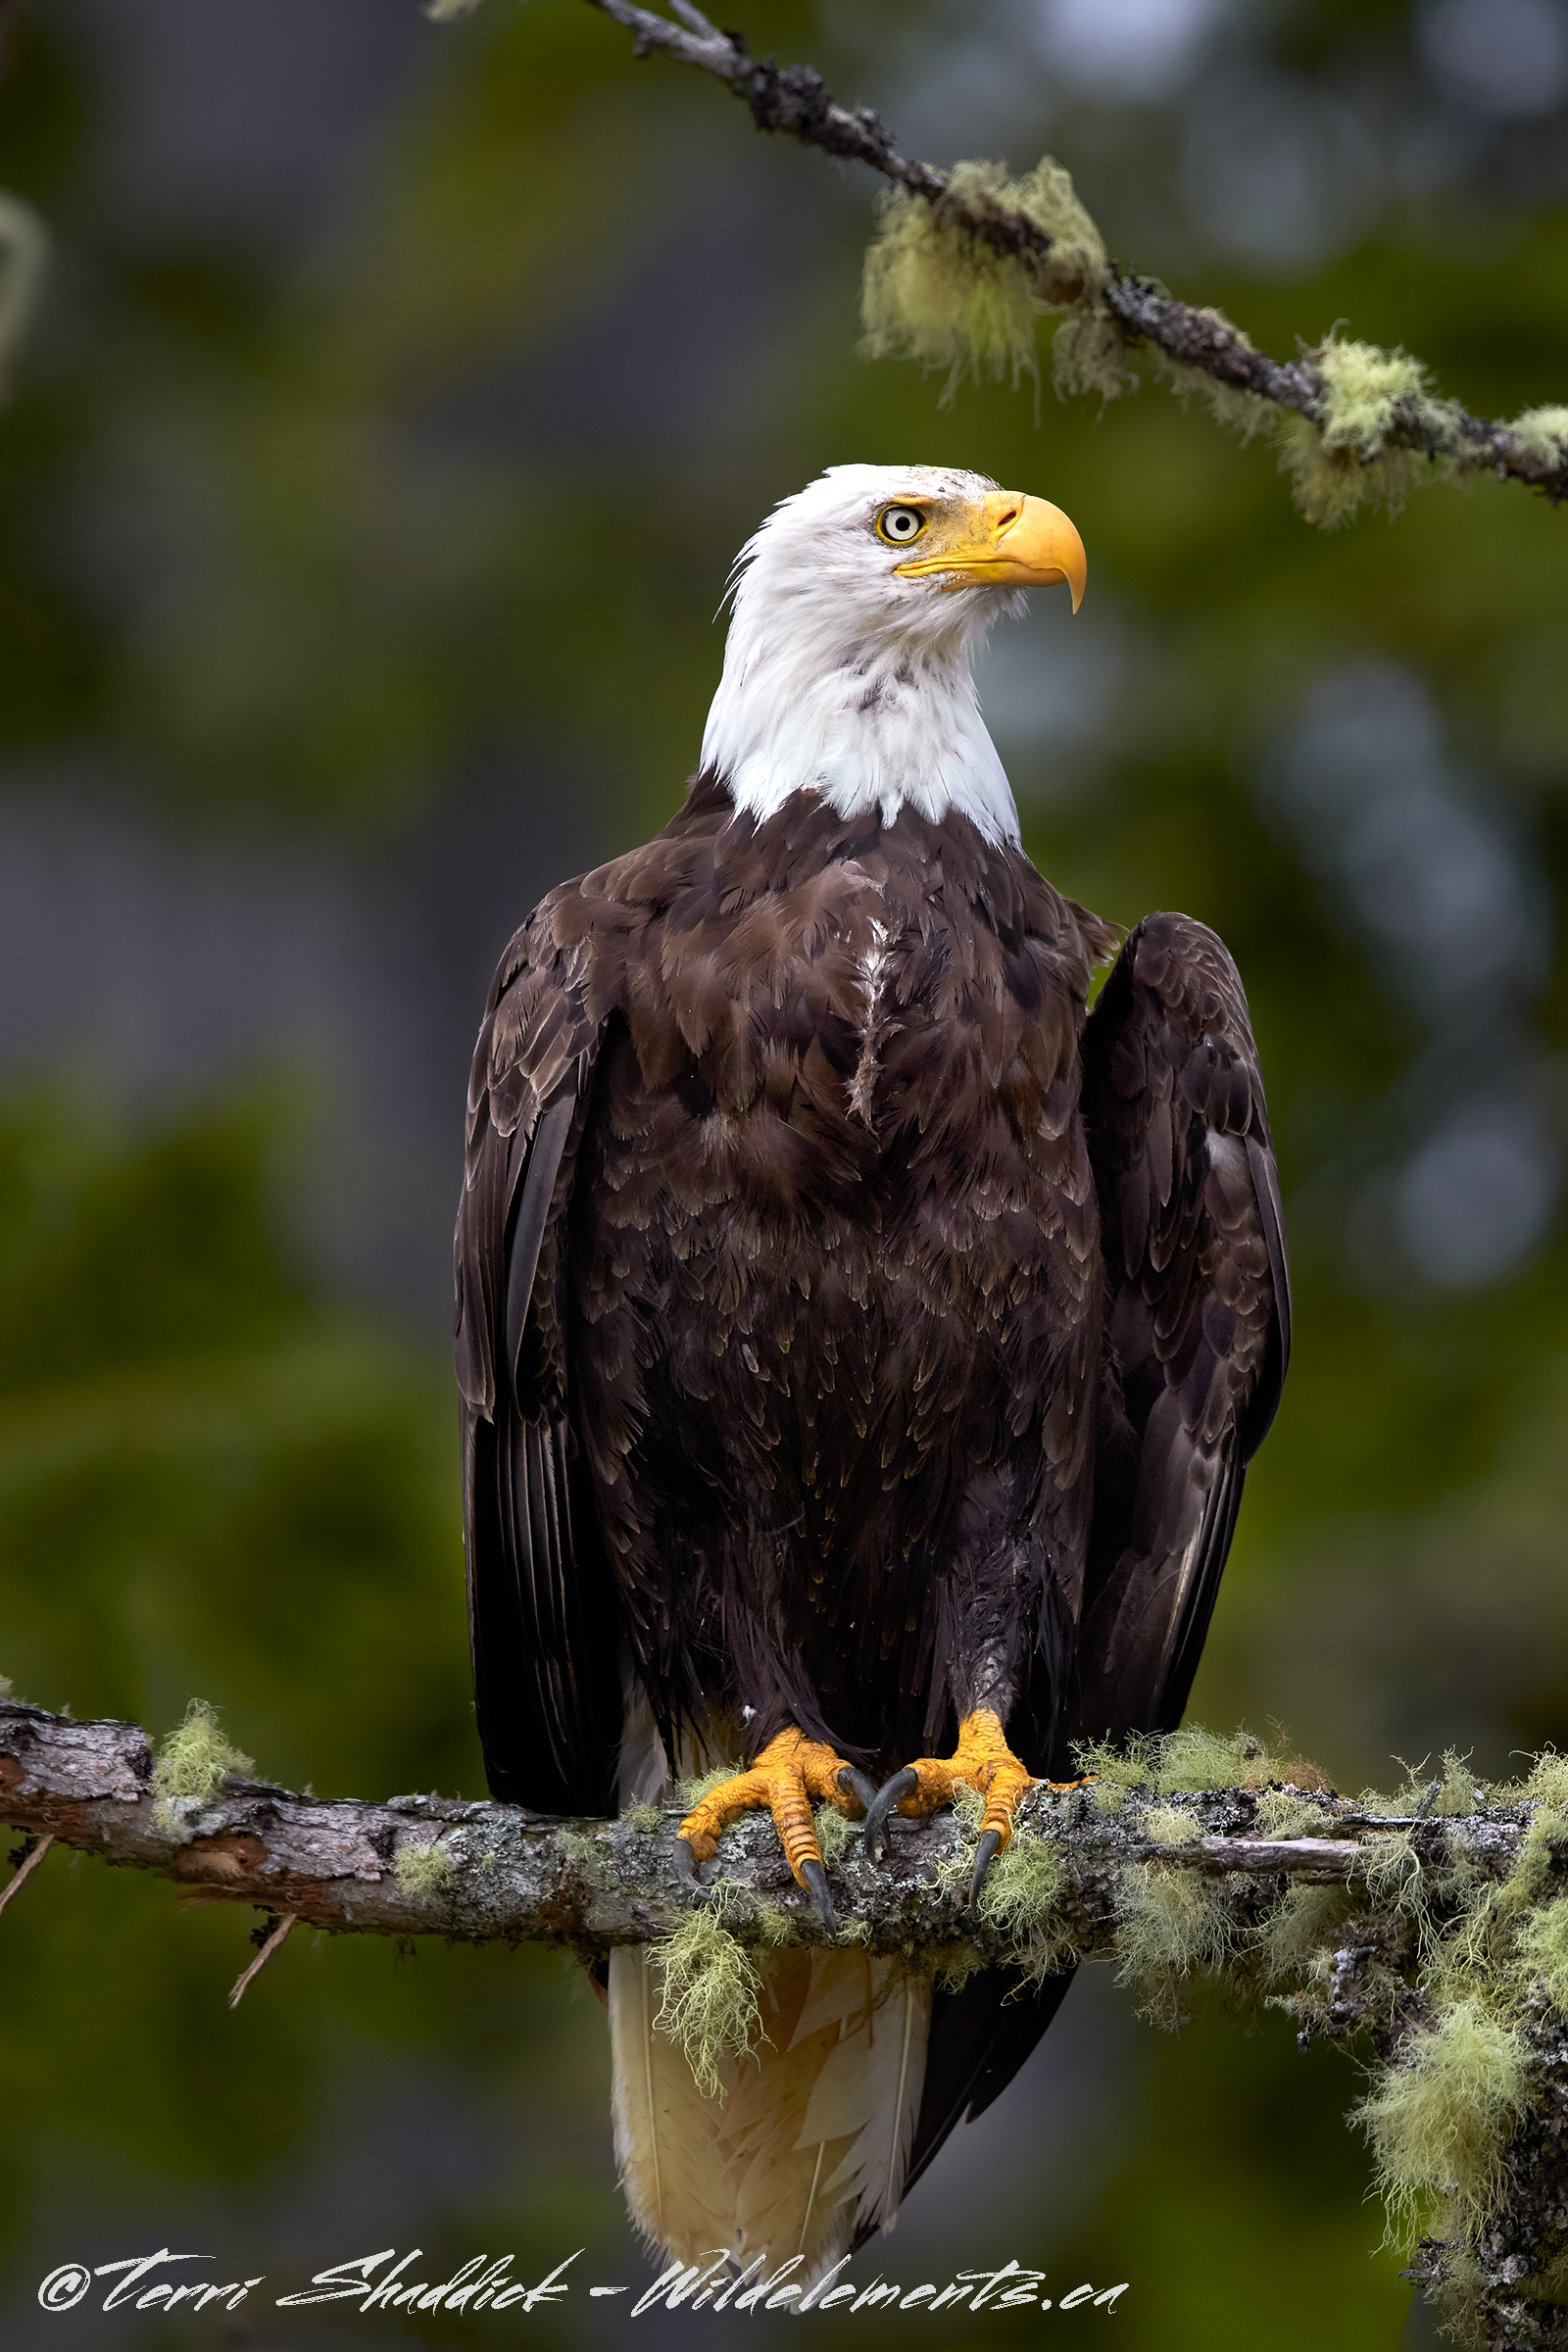 mottled bald eagle